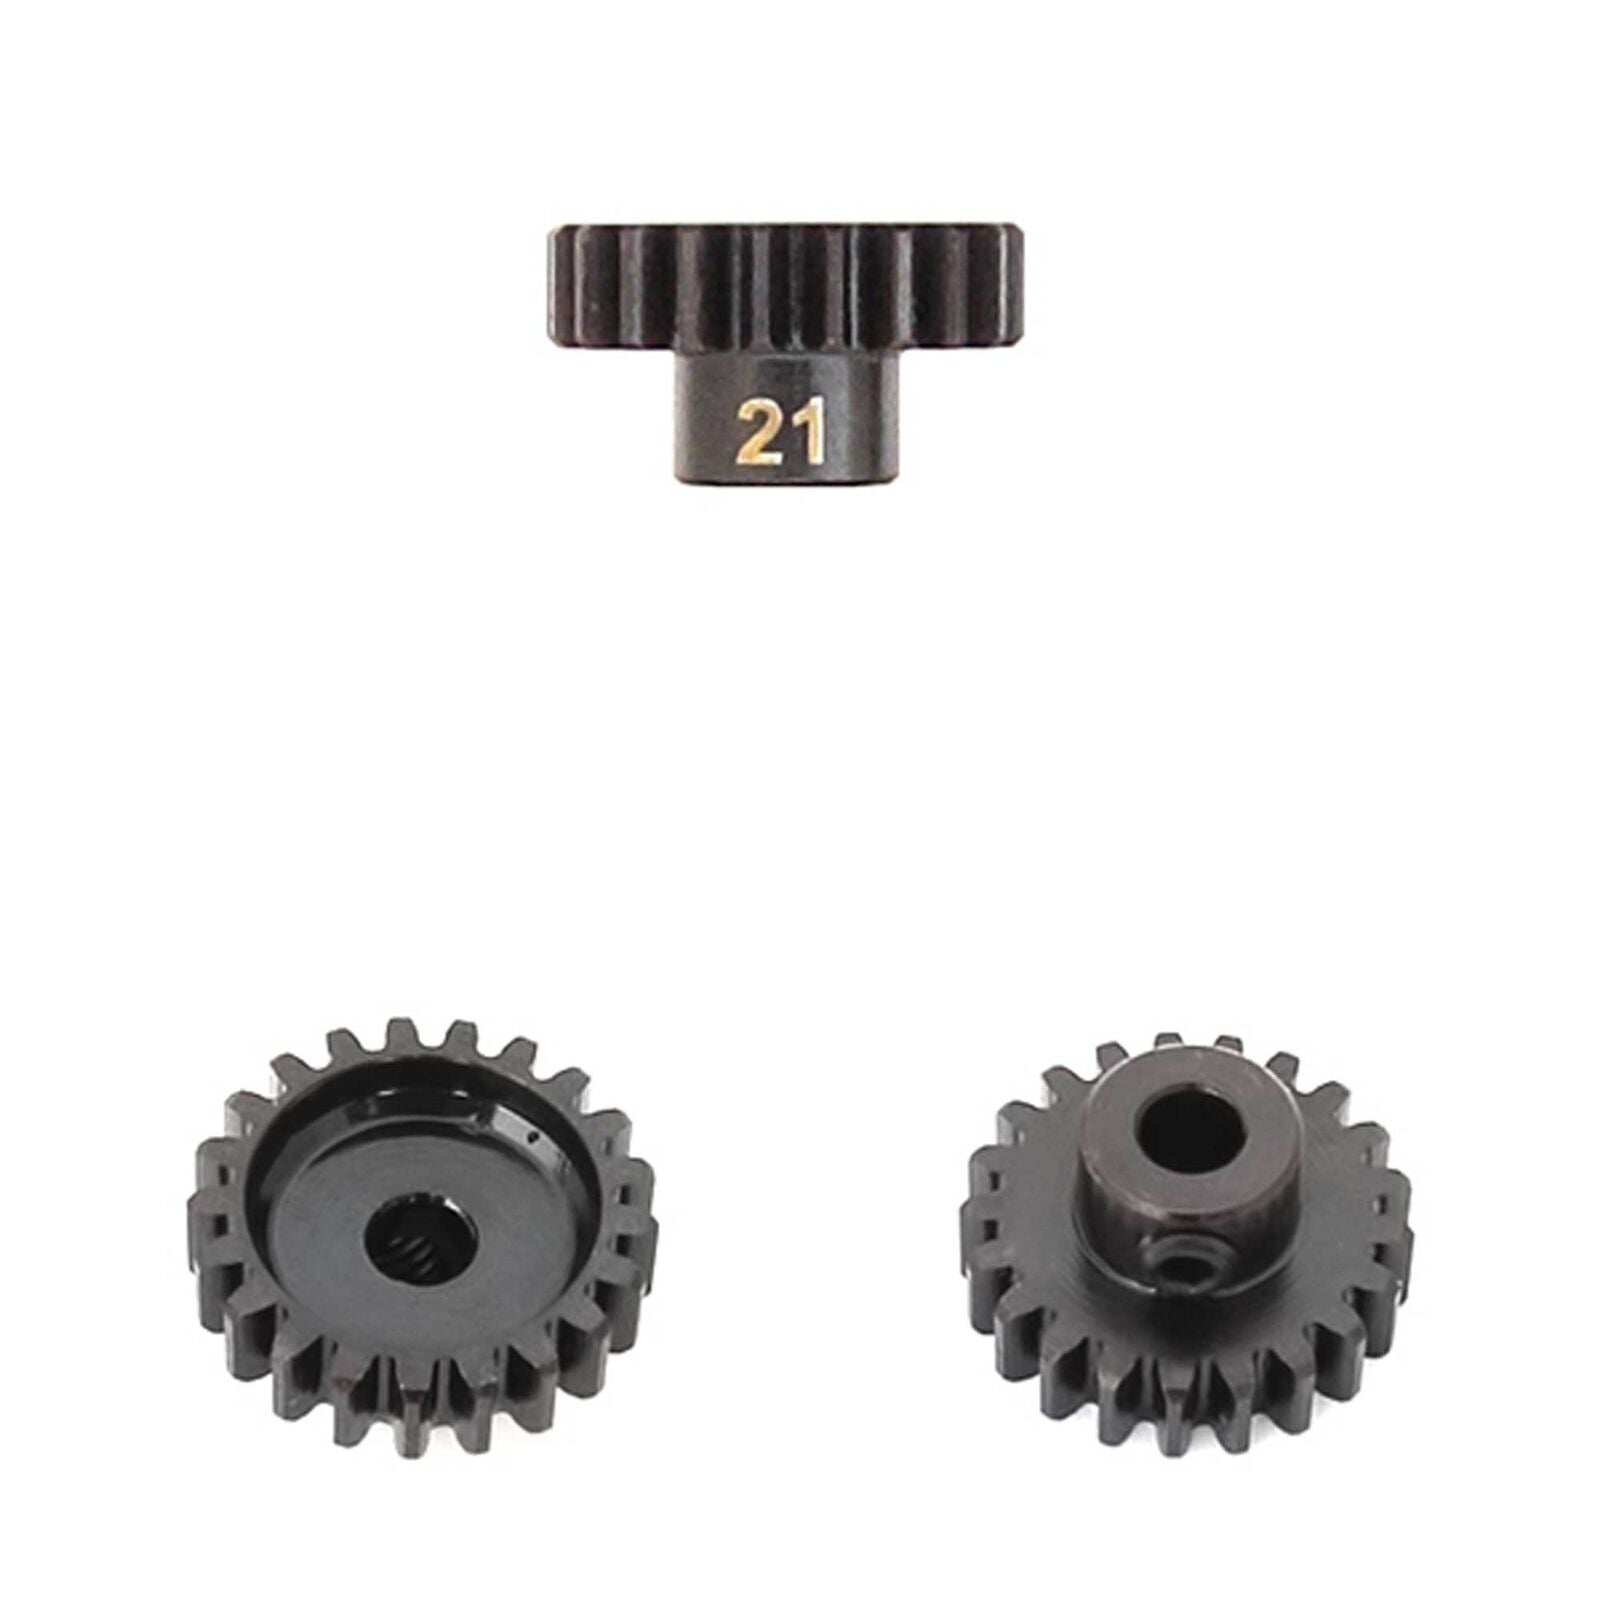 TEKNO TKR4181 M5 Pinion Gear, 21T, MOD1, 5mm Bore, M5 Set Screw